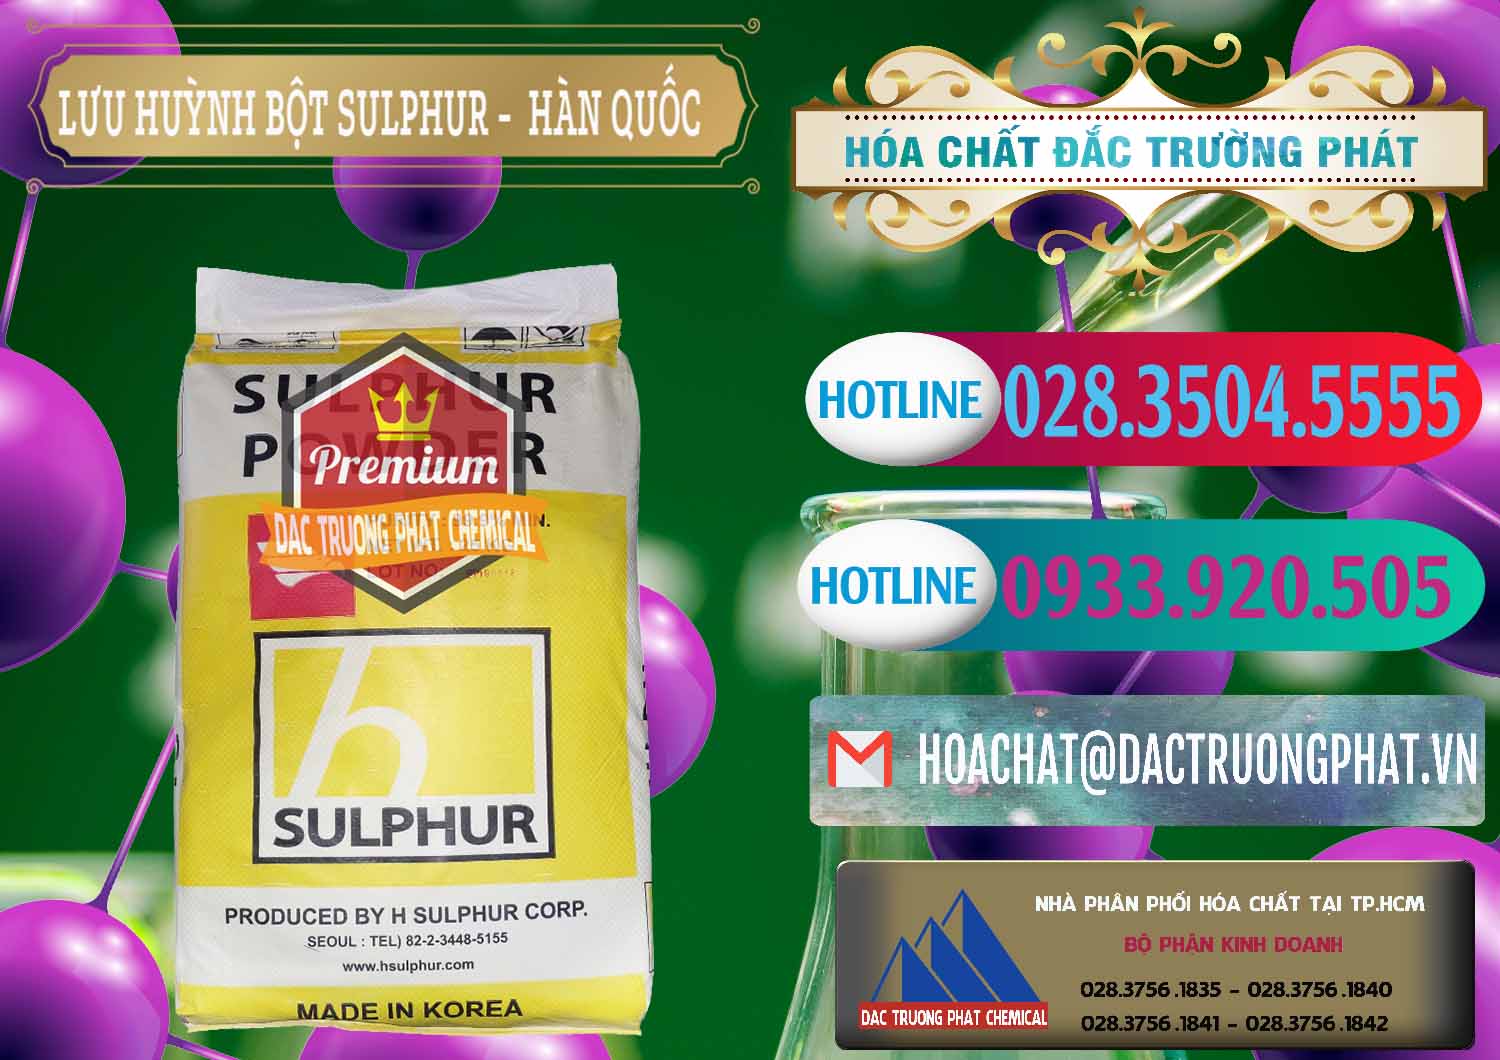 Đơn vị chuyên cung cấp - bán Lưu huỳnh Bột - Sulfur Powder ( H Sulfur ) Hàn Quốc Korea - 0199 - Nơi chuyên bán & cung cấp hóa chất tại TP.HCM - truongphat.vn